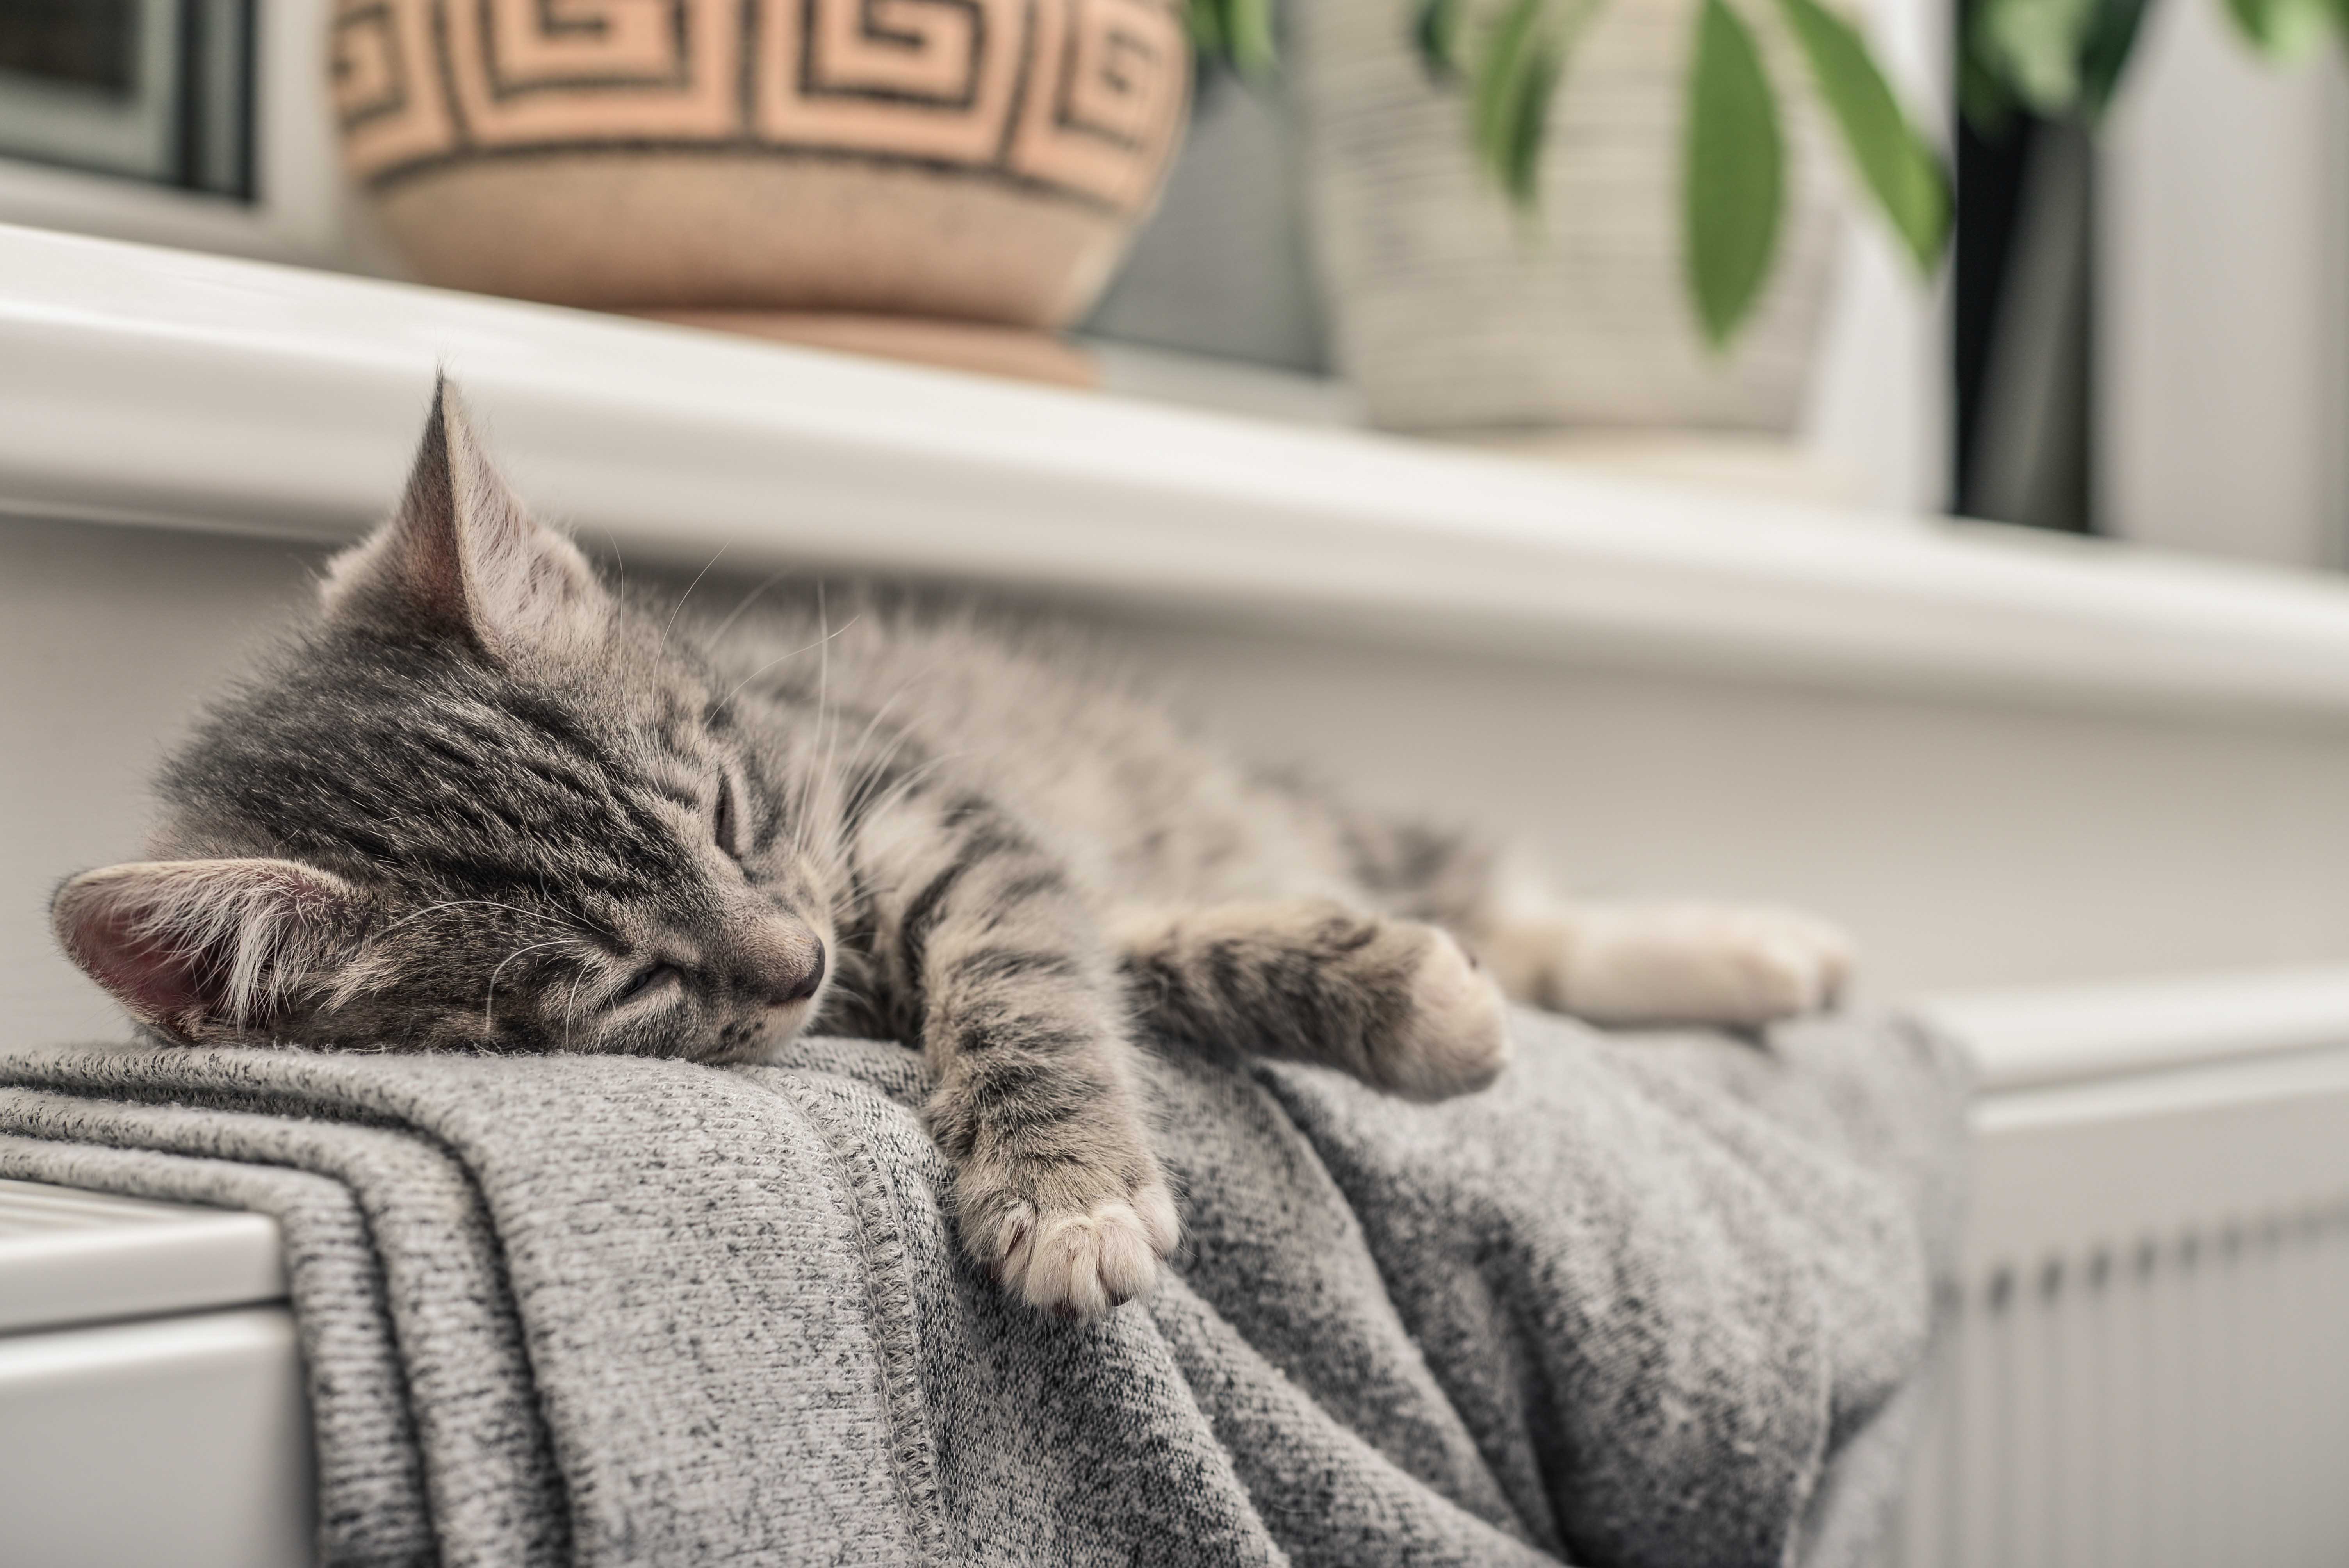 Kitten sleeping on a warm radiator